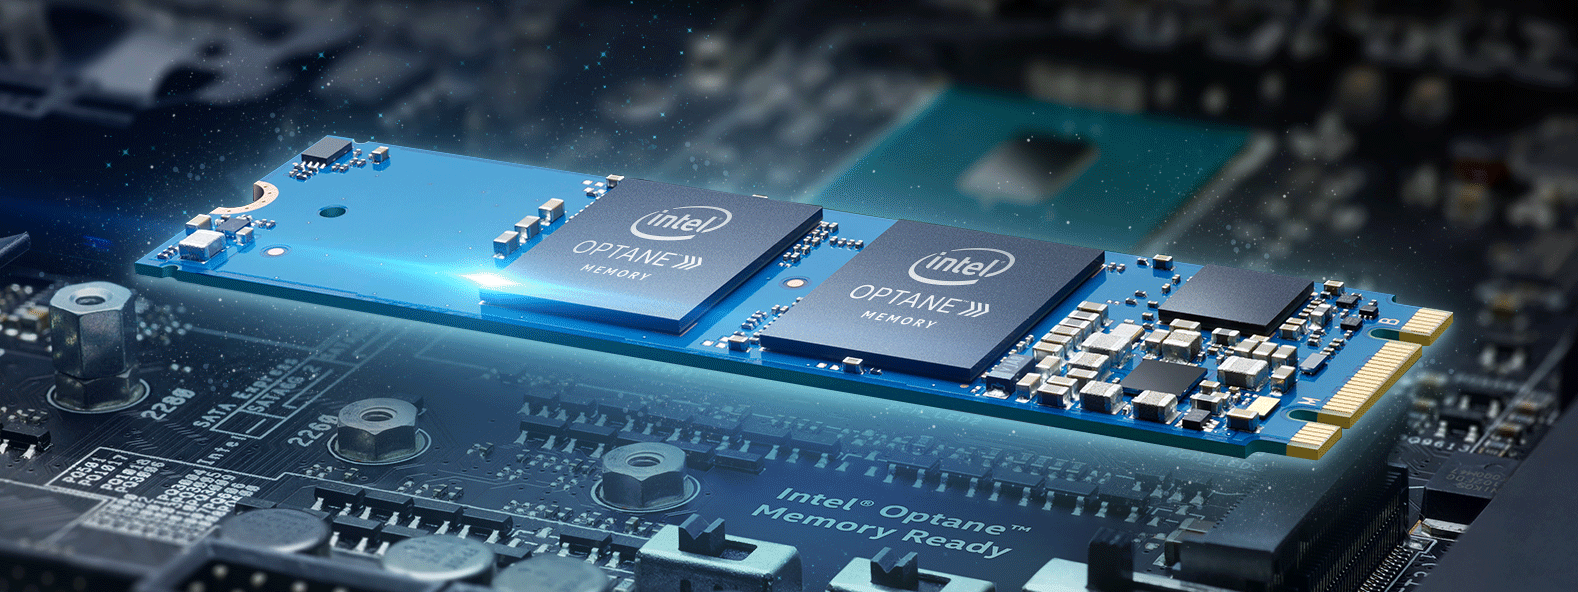 Intel sẽ ra mắt RAM Optane vào năm sau, nhanh như DDR4 và có thể dùng như SSD